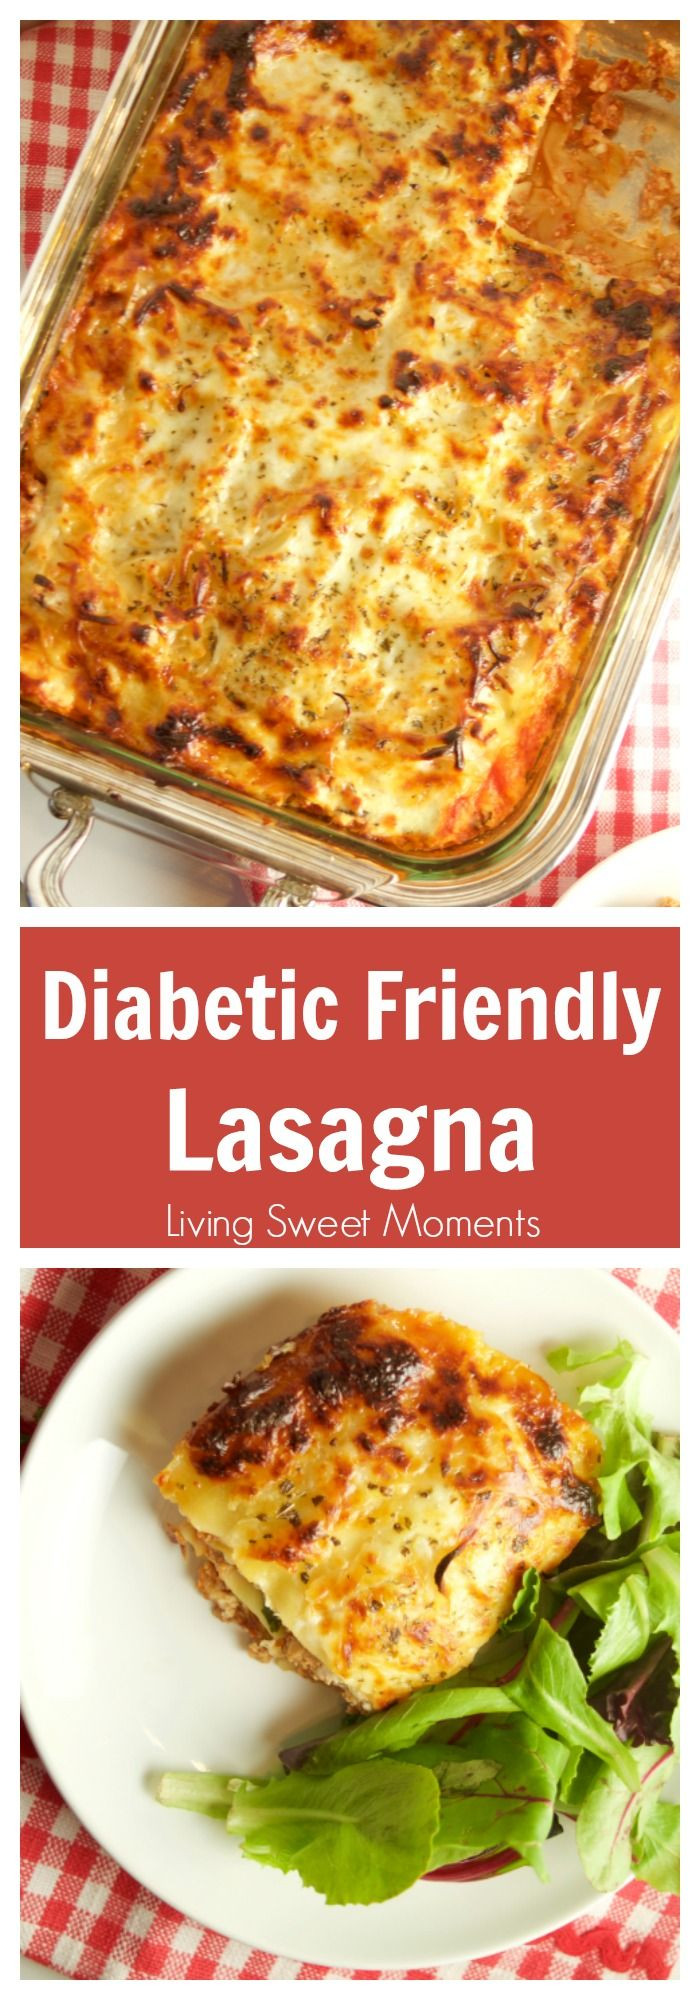 Dinner Recipe For Diabetics
 100 Diabetic Dinner Recipes on Pinterest